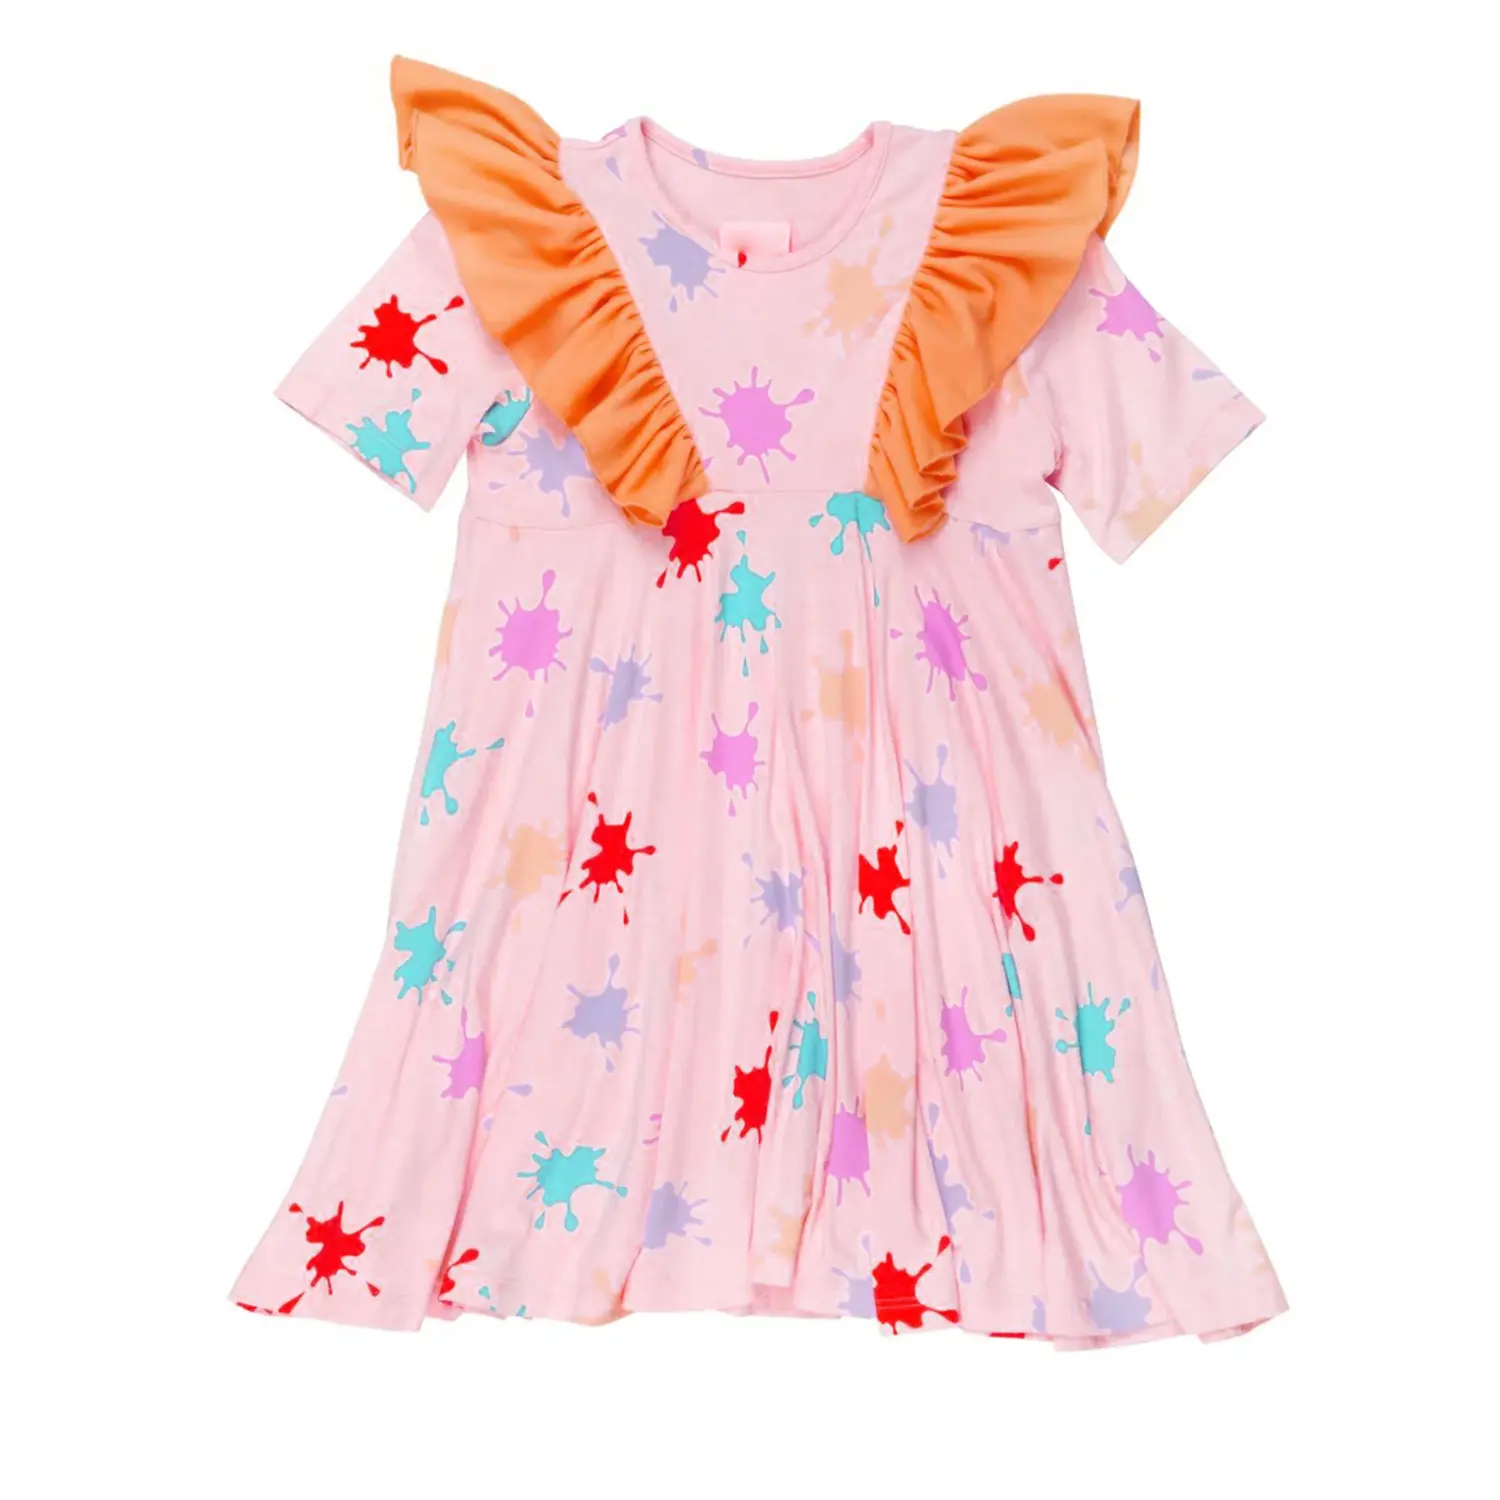 האחרונה עיצוב צבע לחסום שרוולים rule בנות שמלות כותנה לקיץ שמלות קיץ